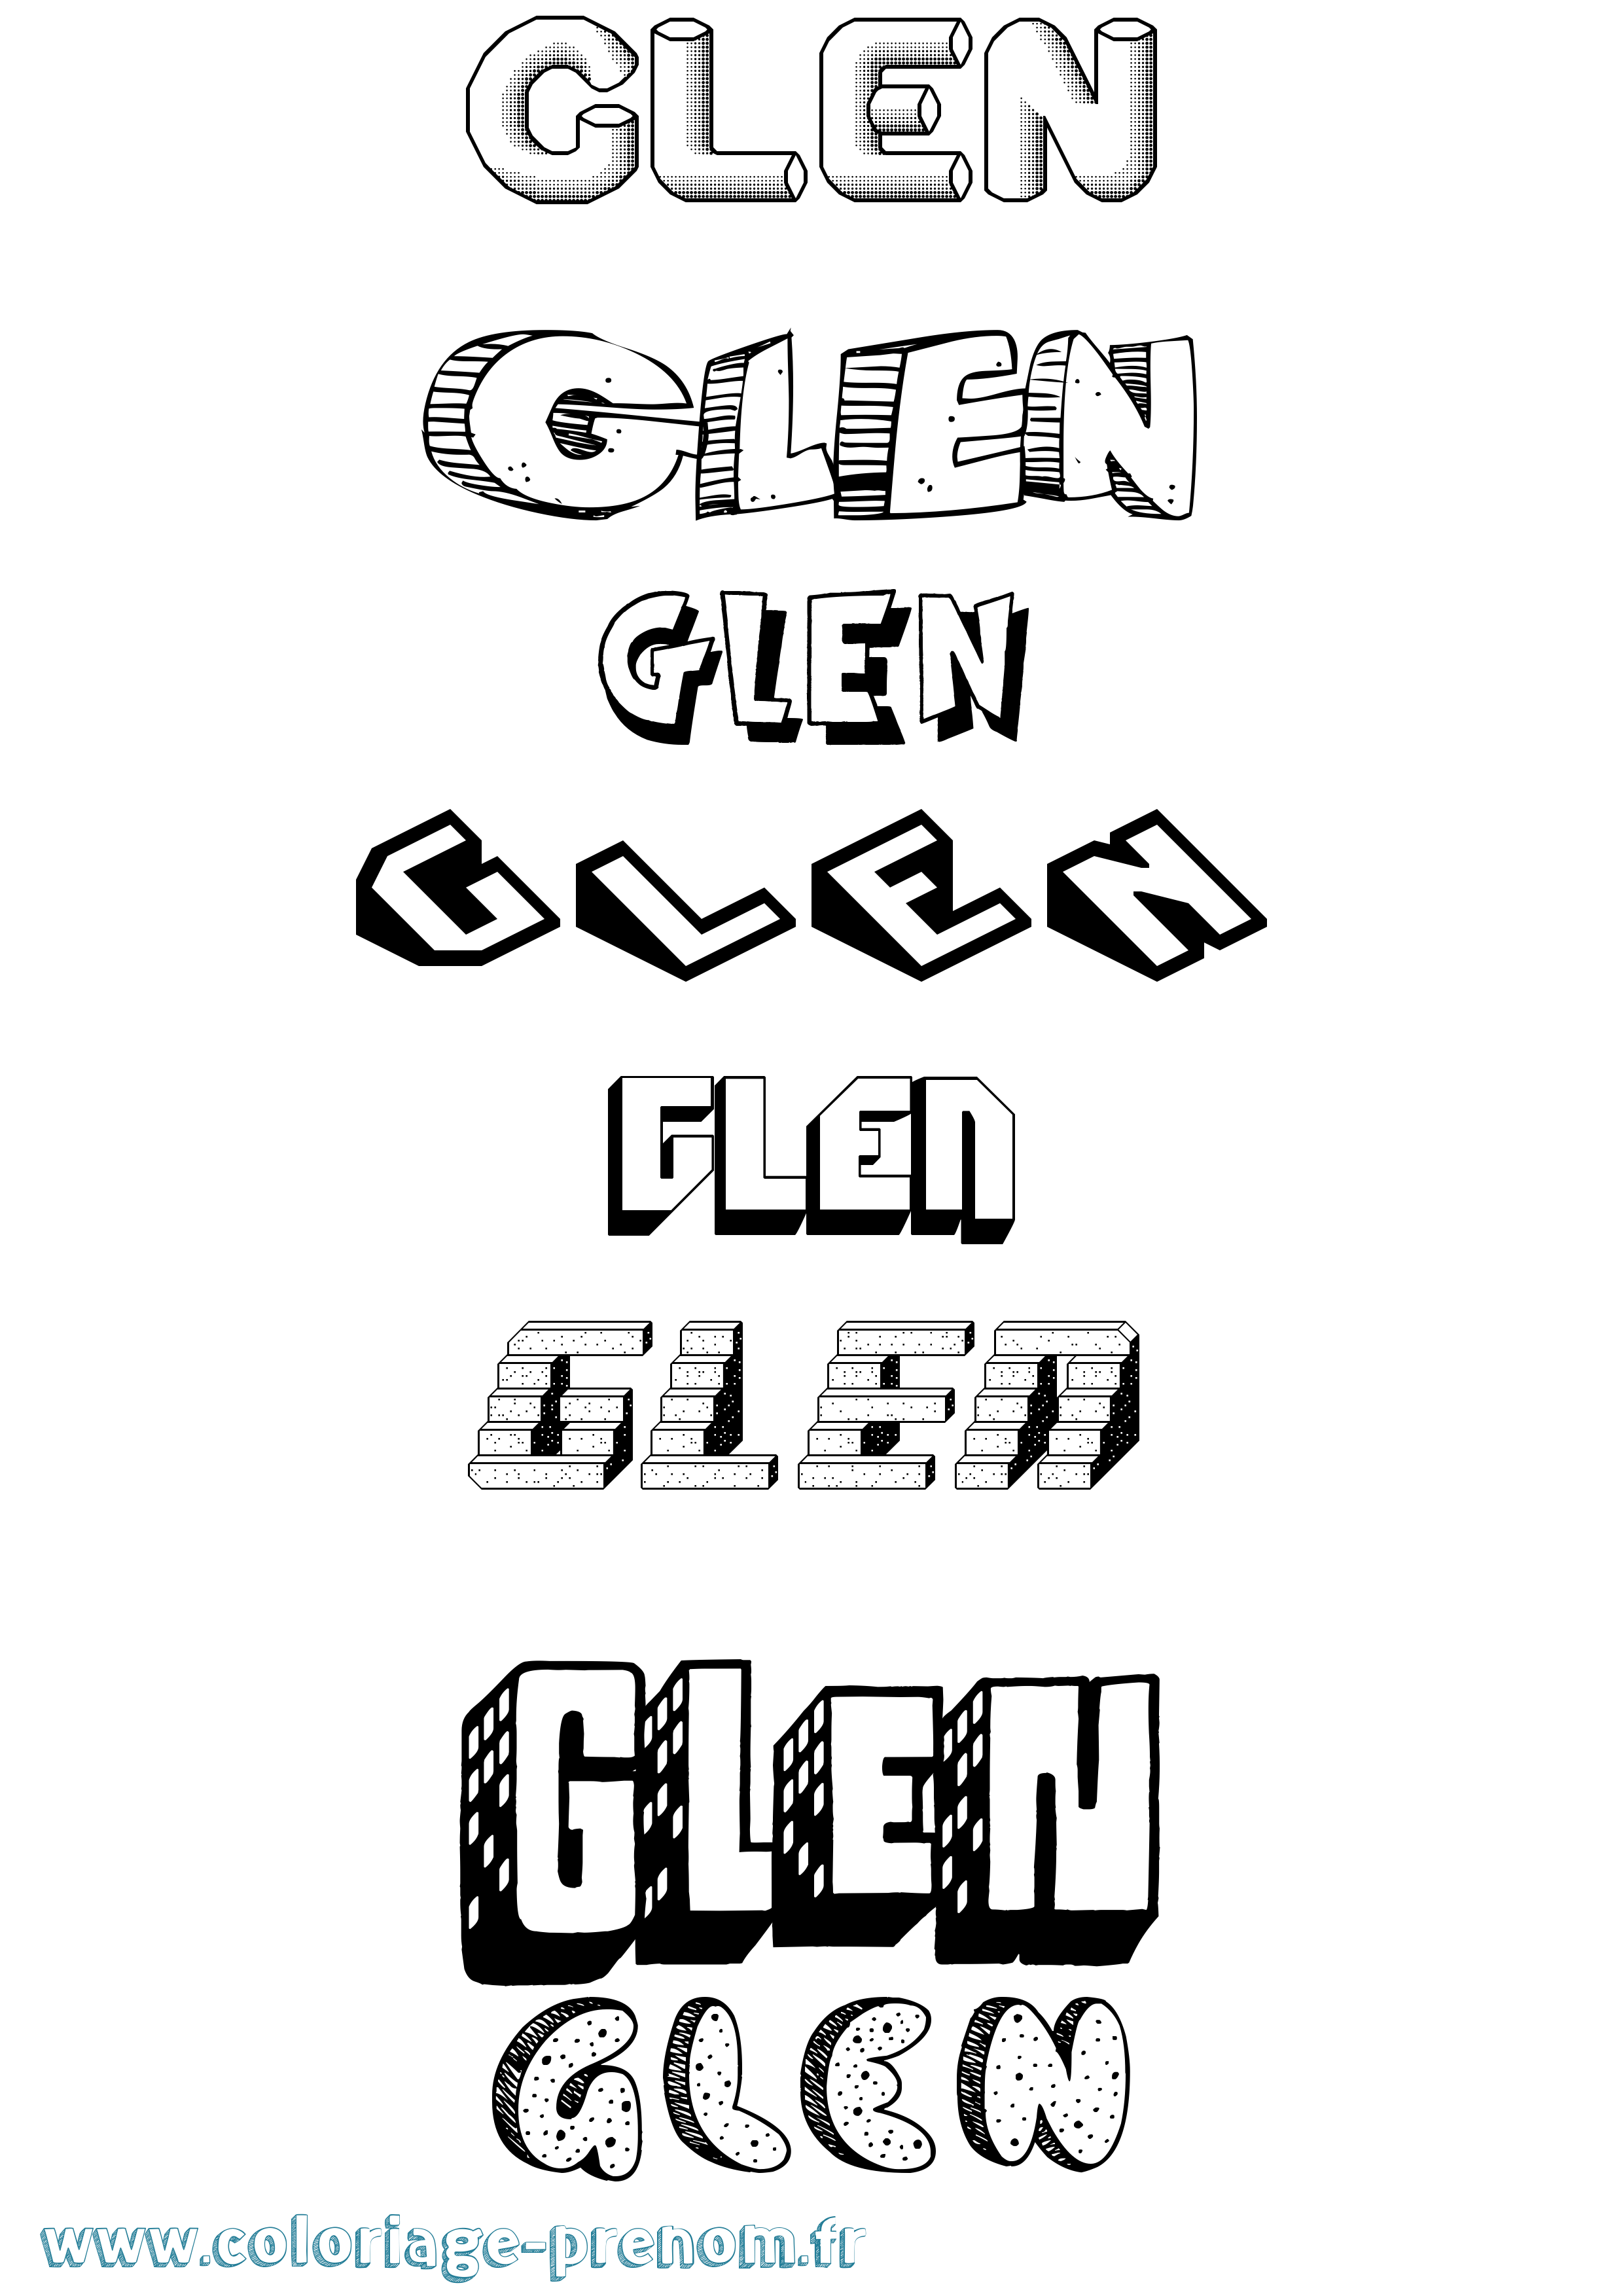 Coloriage prénom Glen Effet 3D